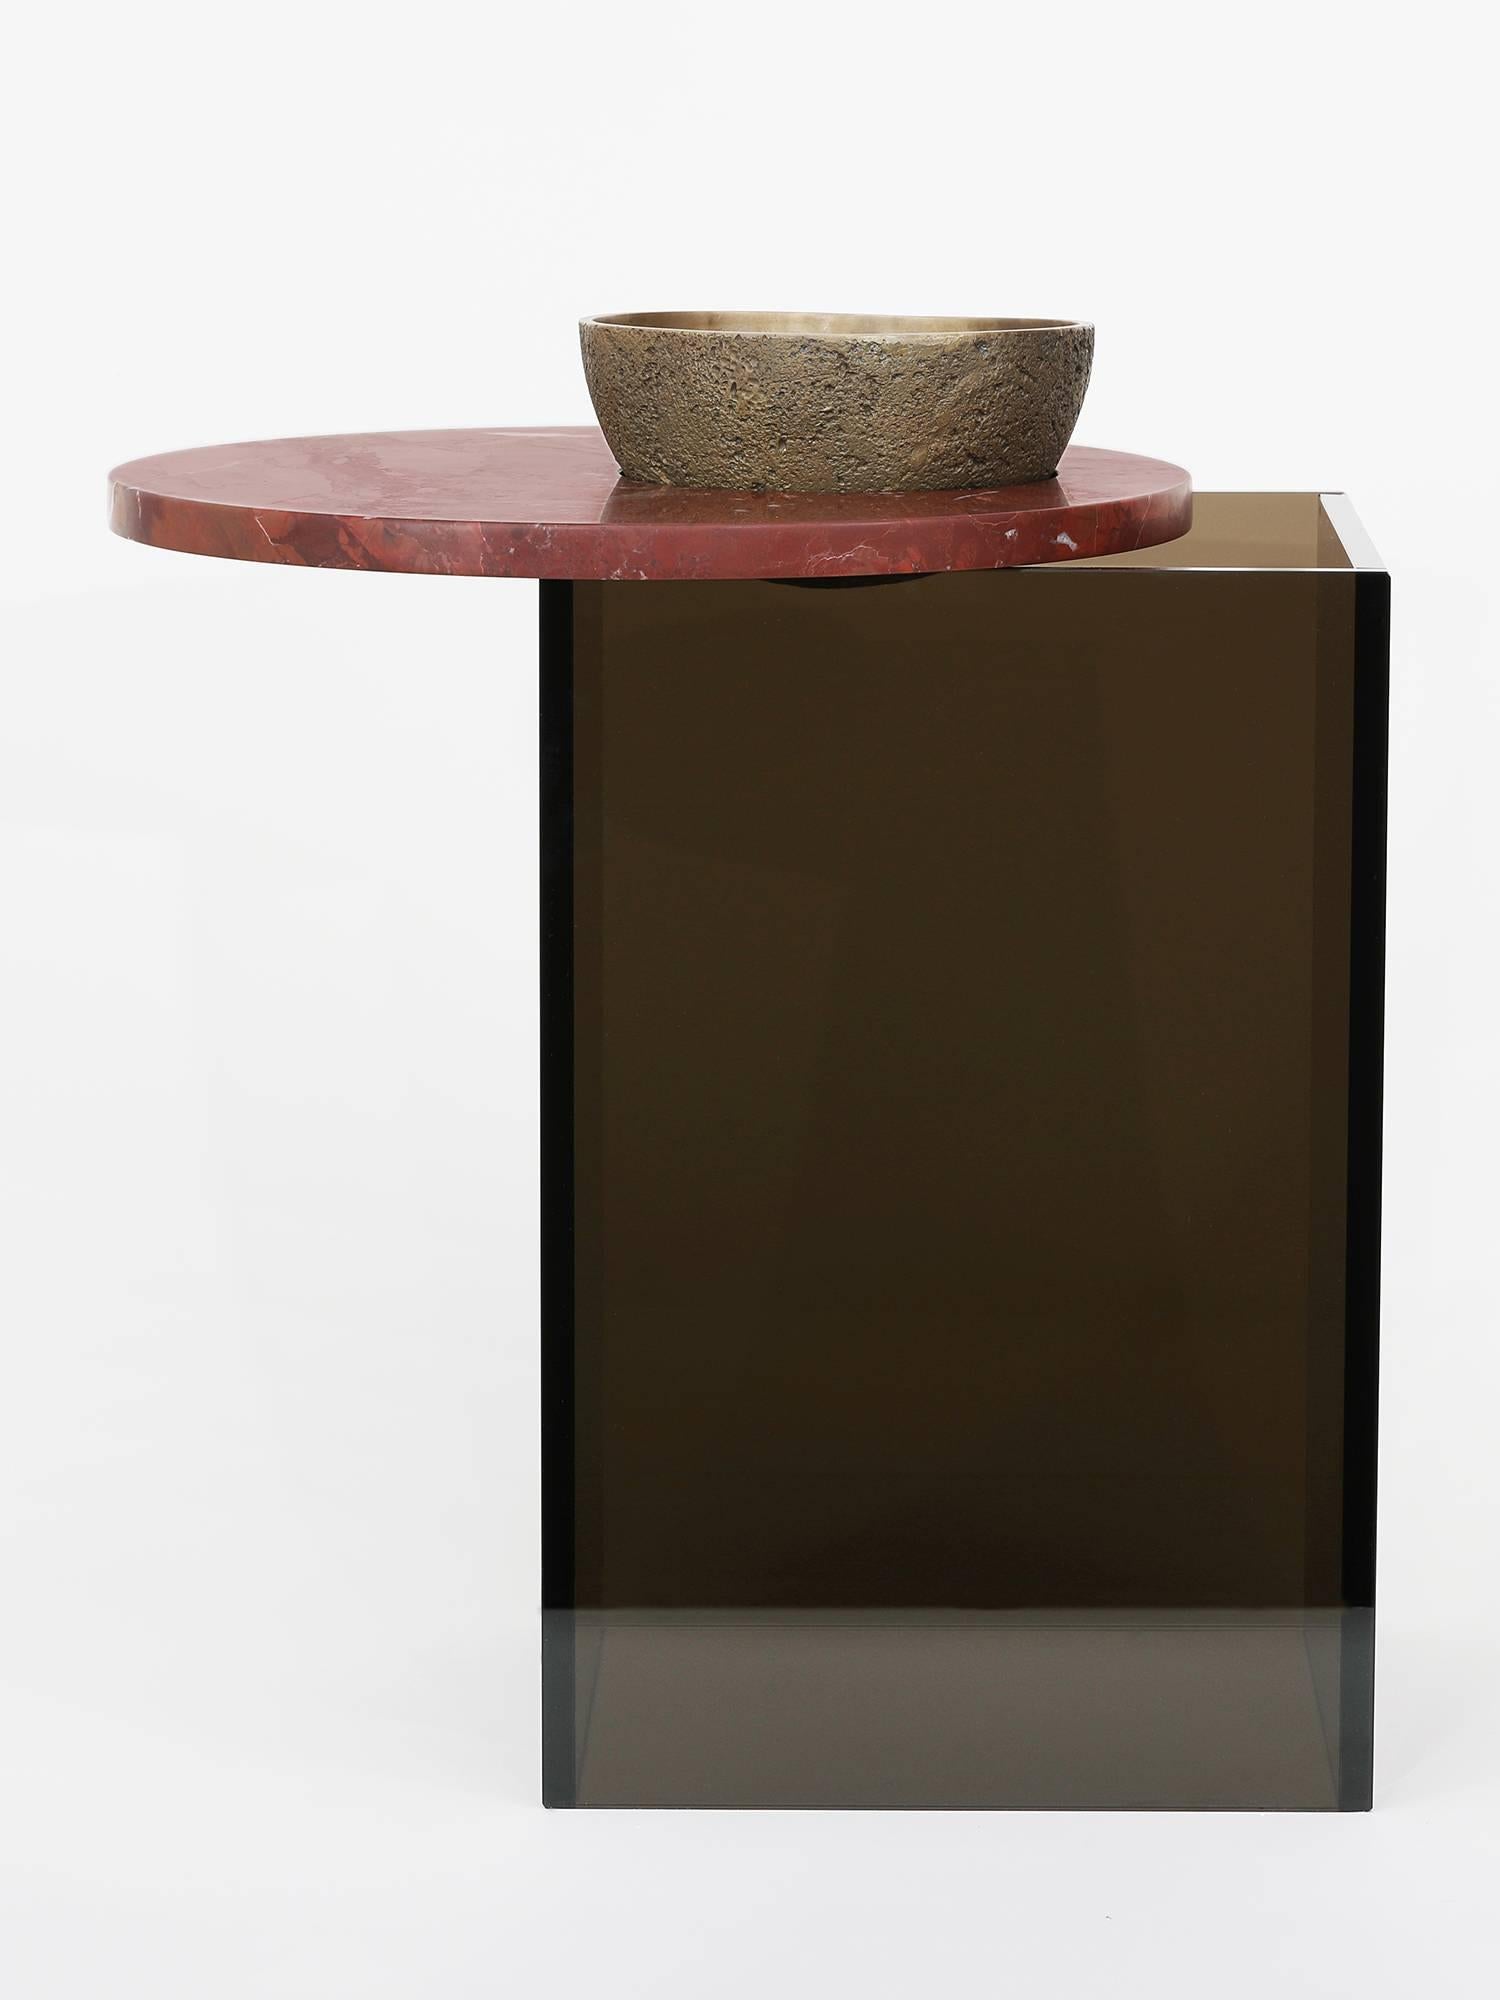 L'un des trois récipients conçus pour servir de maquette aux œuvres plus importantes de Brian Thoreen. Composé d'un bol en bronze moulé, d'un plateau en marbre rouge et d'une base en verre de bronze. La hauteur d'une petite table d'appoint ou d'un